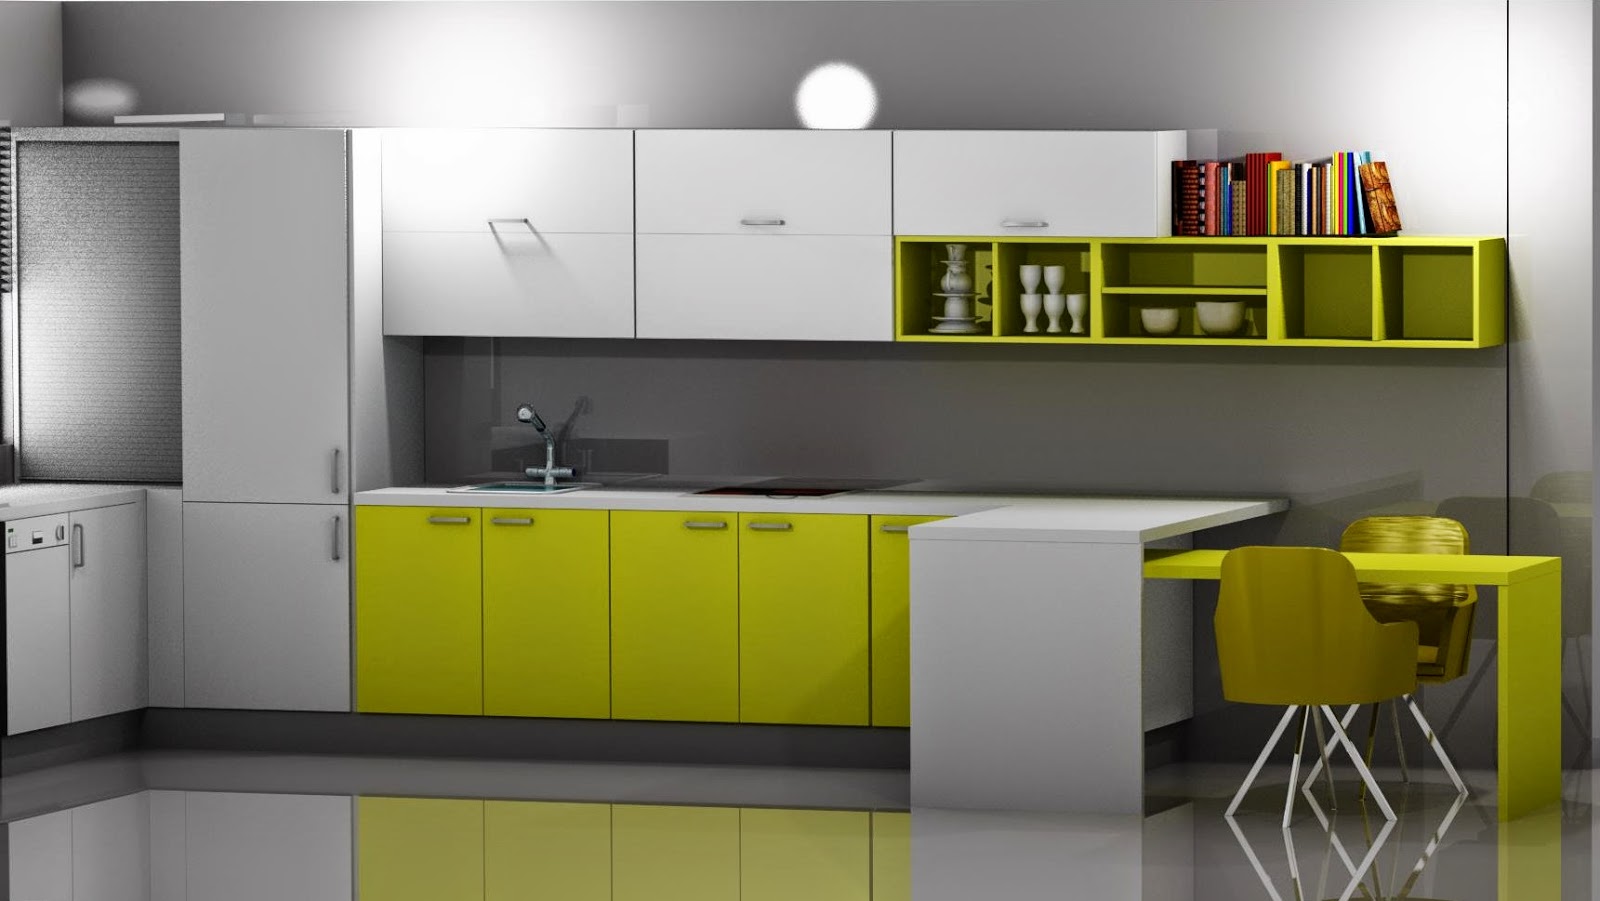 Diseño muebles de cocina: Diseño de cocina laminado en blanco y amarillo